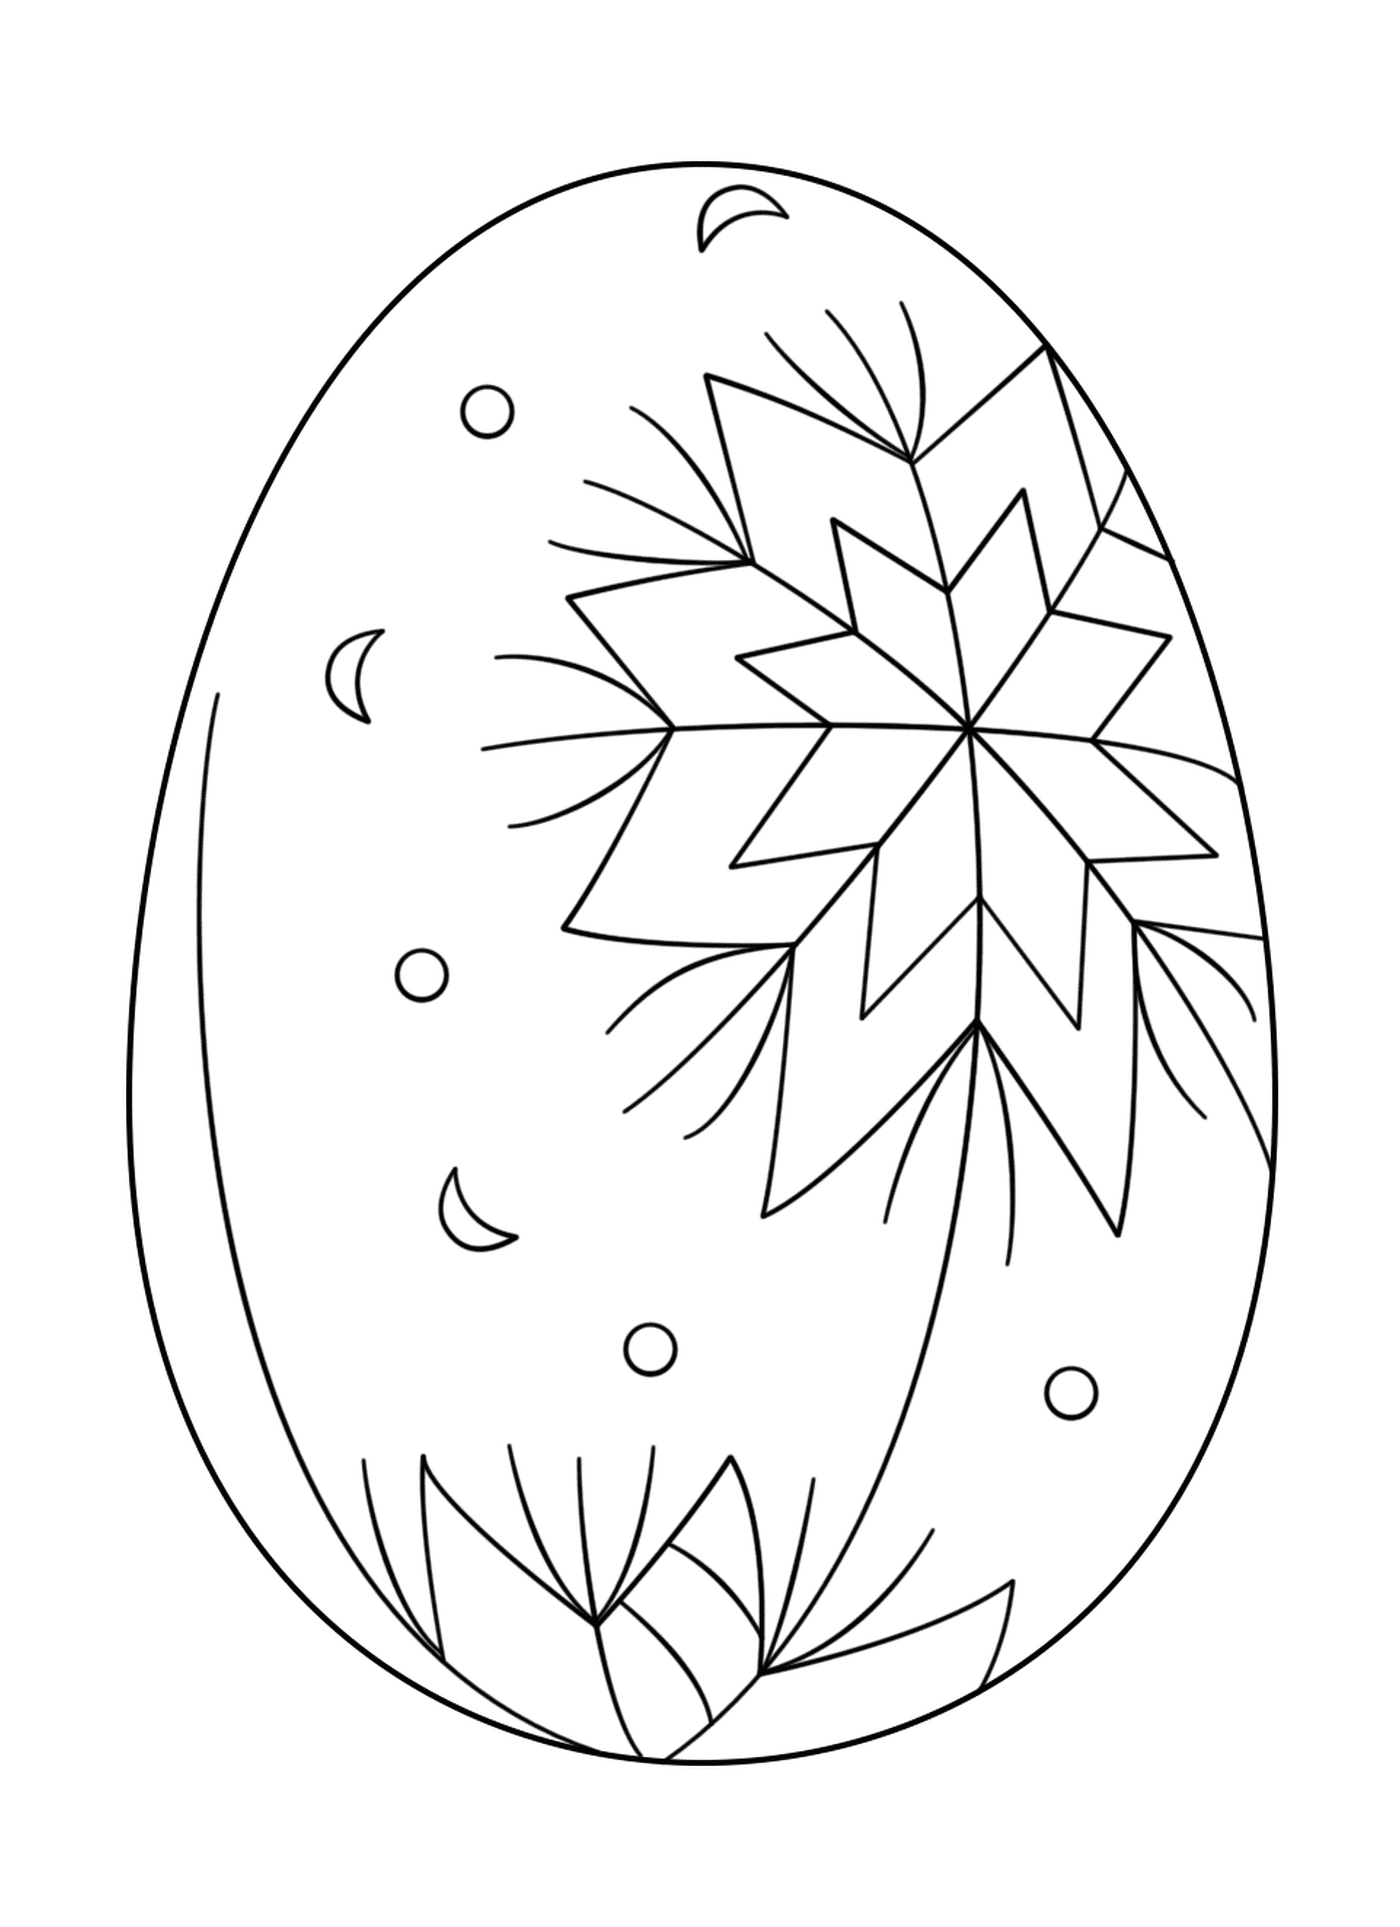  Пасхальное яйцо с аббревиатурой_2 